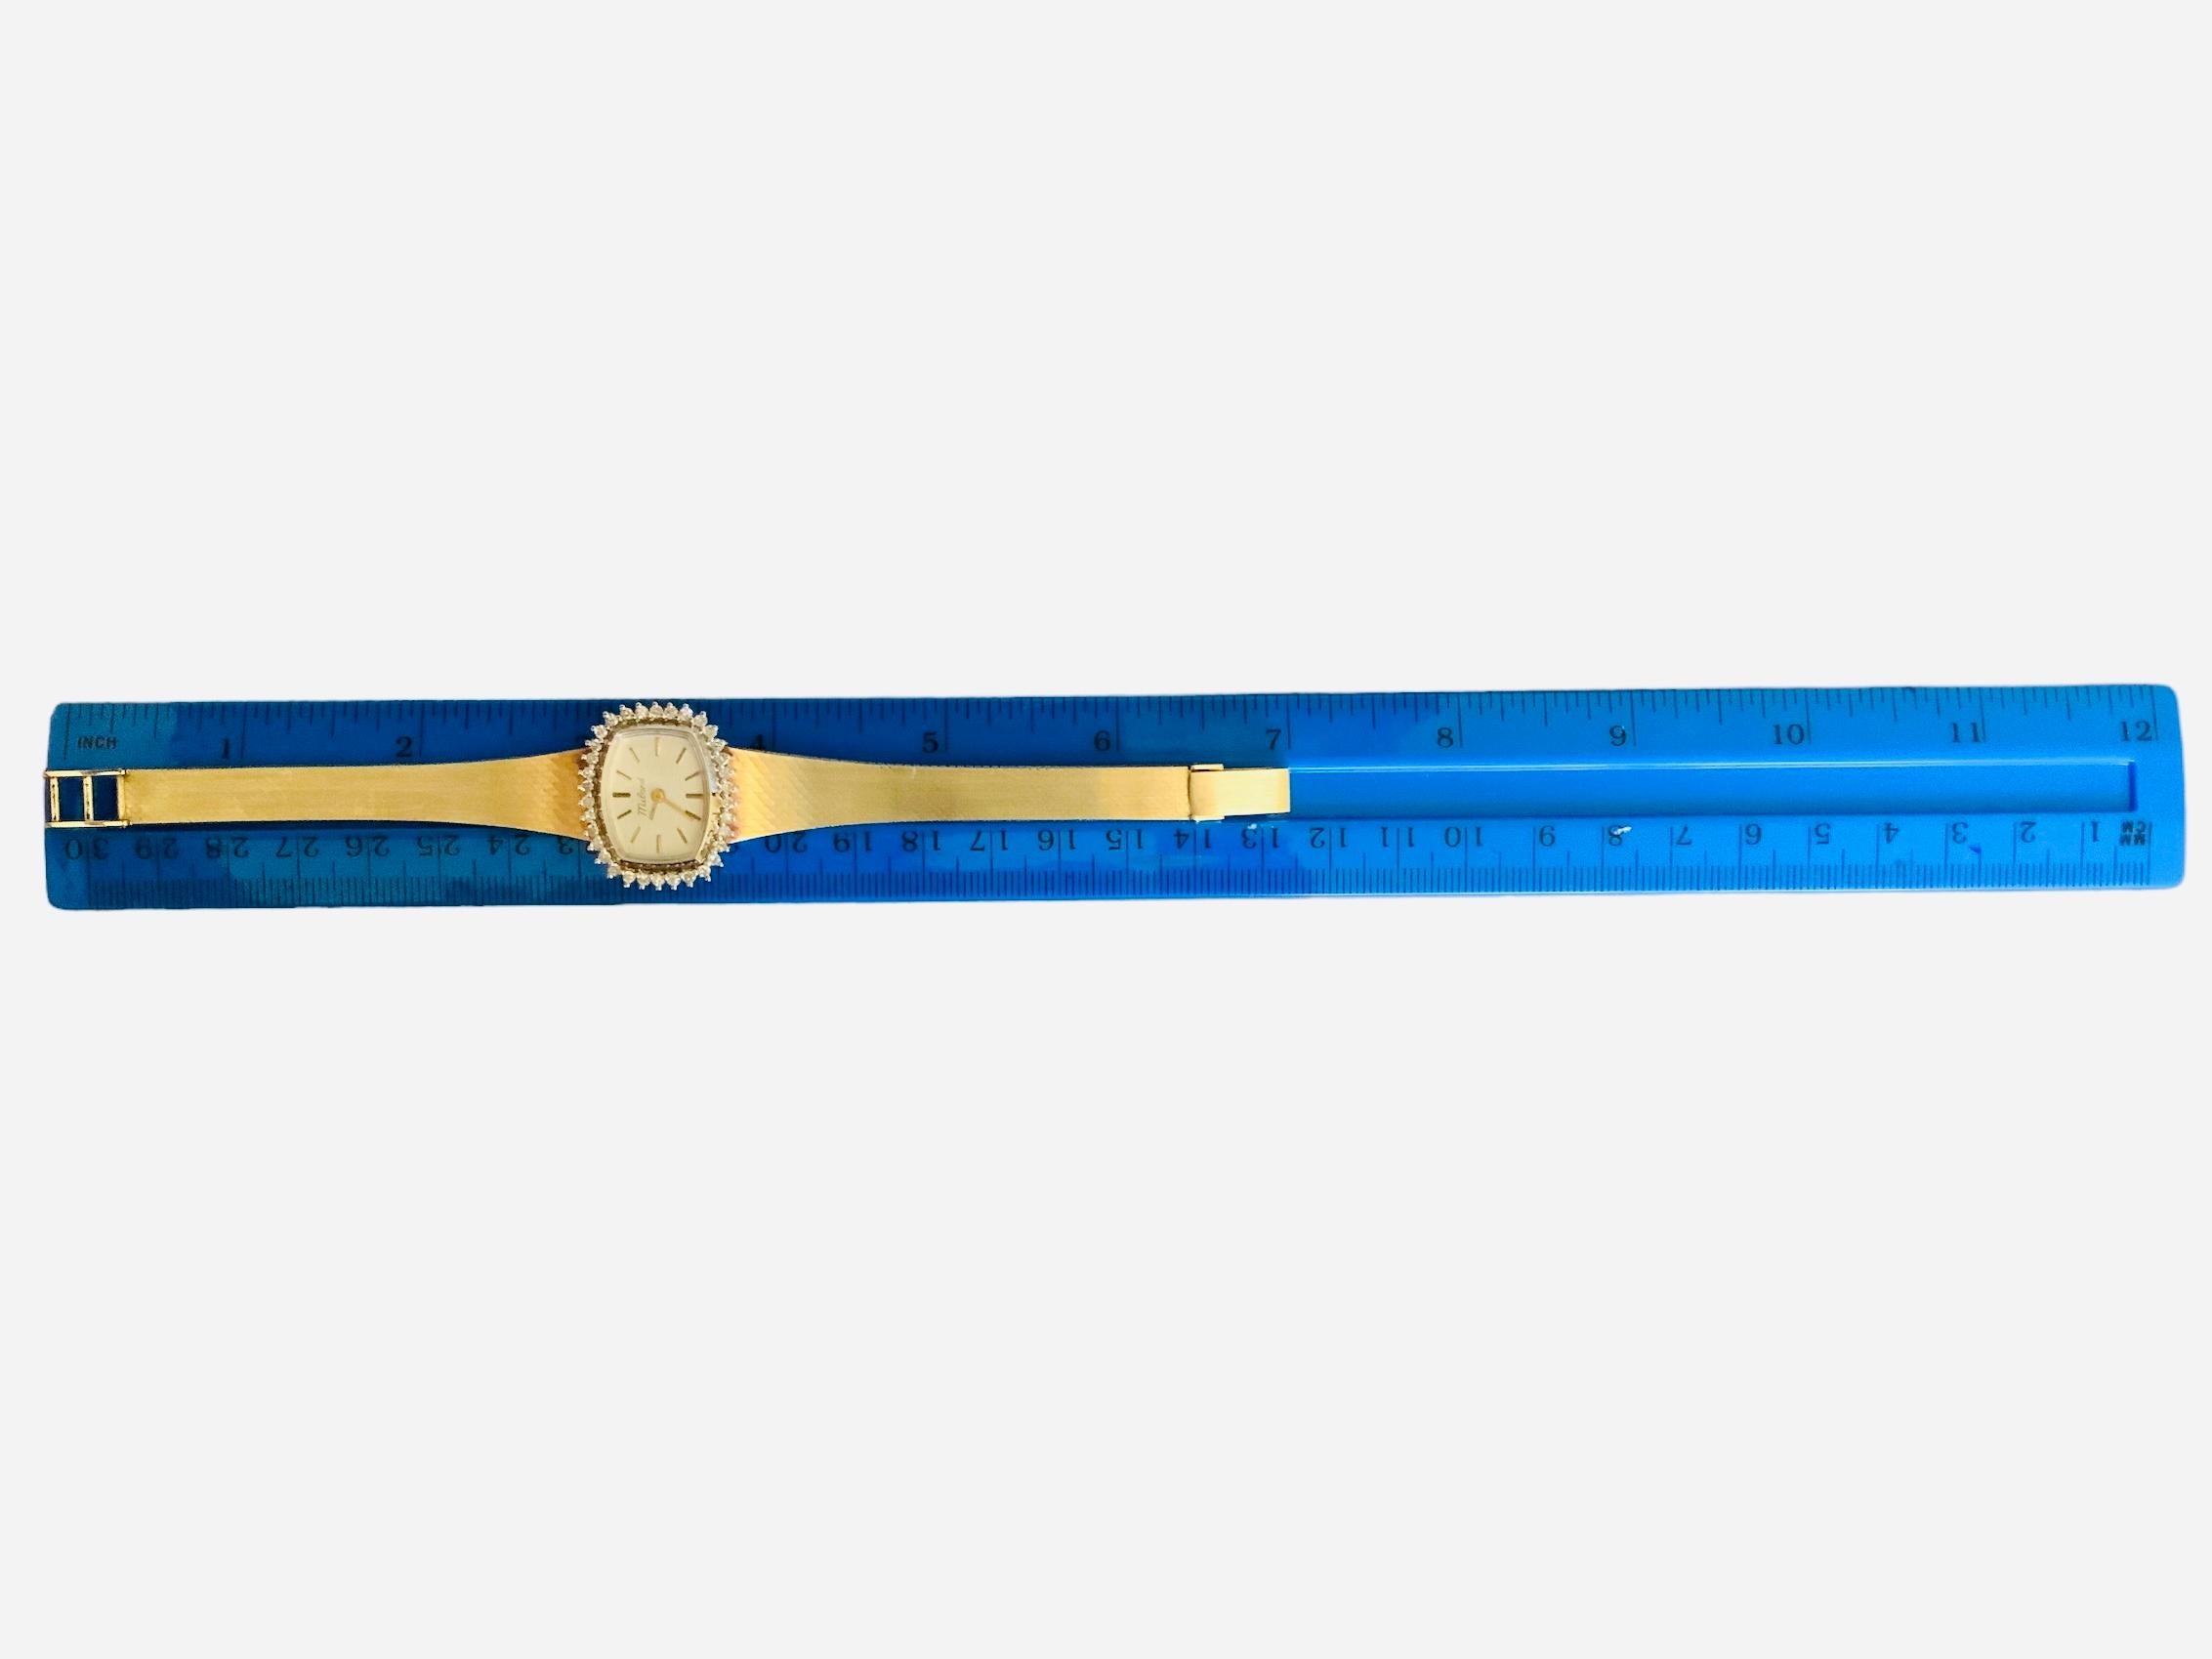 Il s'agit d'une montre pour femme en or 14K. Il s'agit d'un modèle Milord. Elle est reconnue comme une montre habillée élégante. Elle est dotée d'un mouvement à remontage manuel. Le cadran est de couleur champagne et est poinçonné Milord en haut.